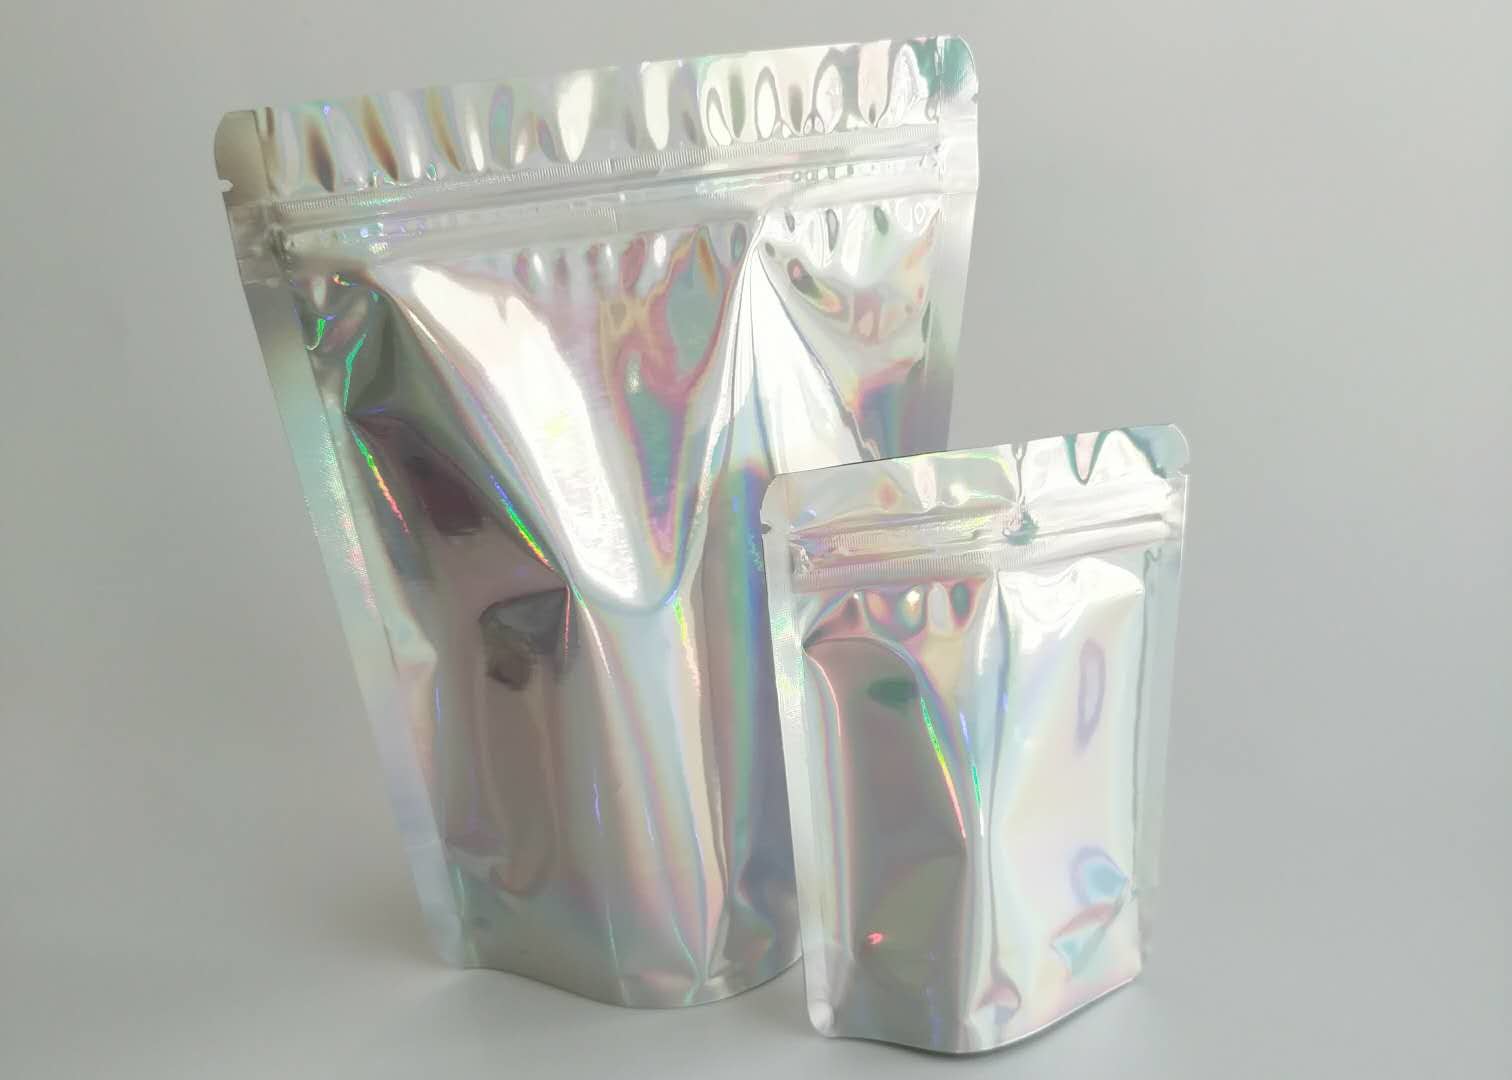 Offenbar sackt Fenster-Verpackung mit Reißverschluss umweltfreundliches für medizinische Süßigkeit ein